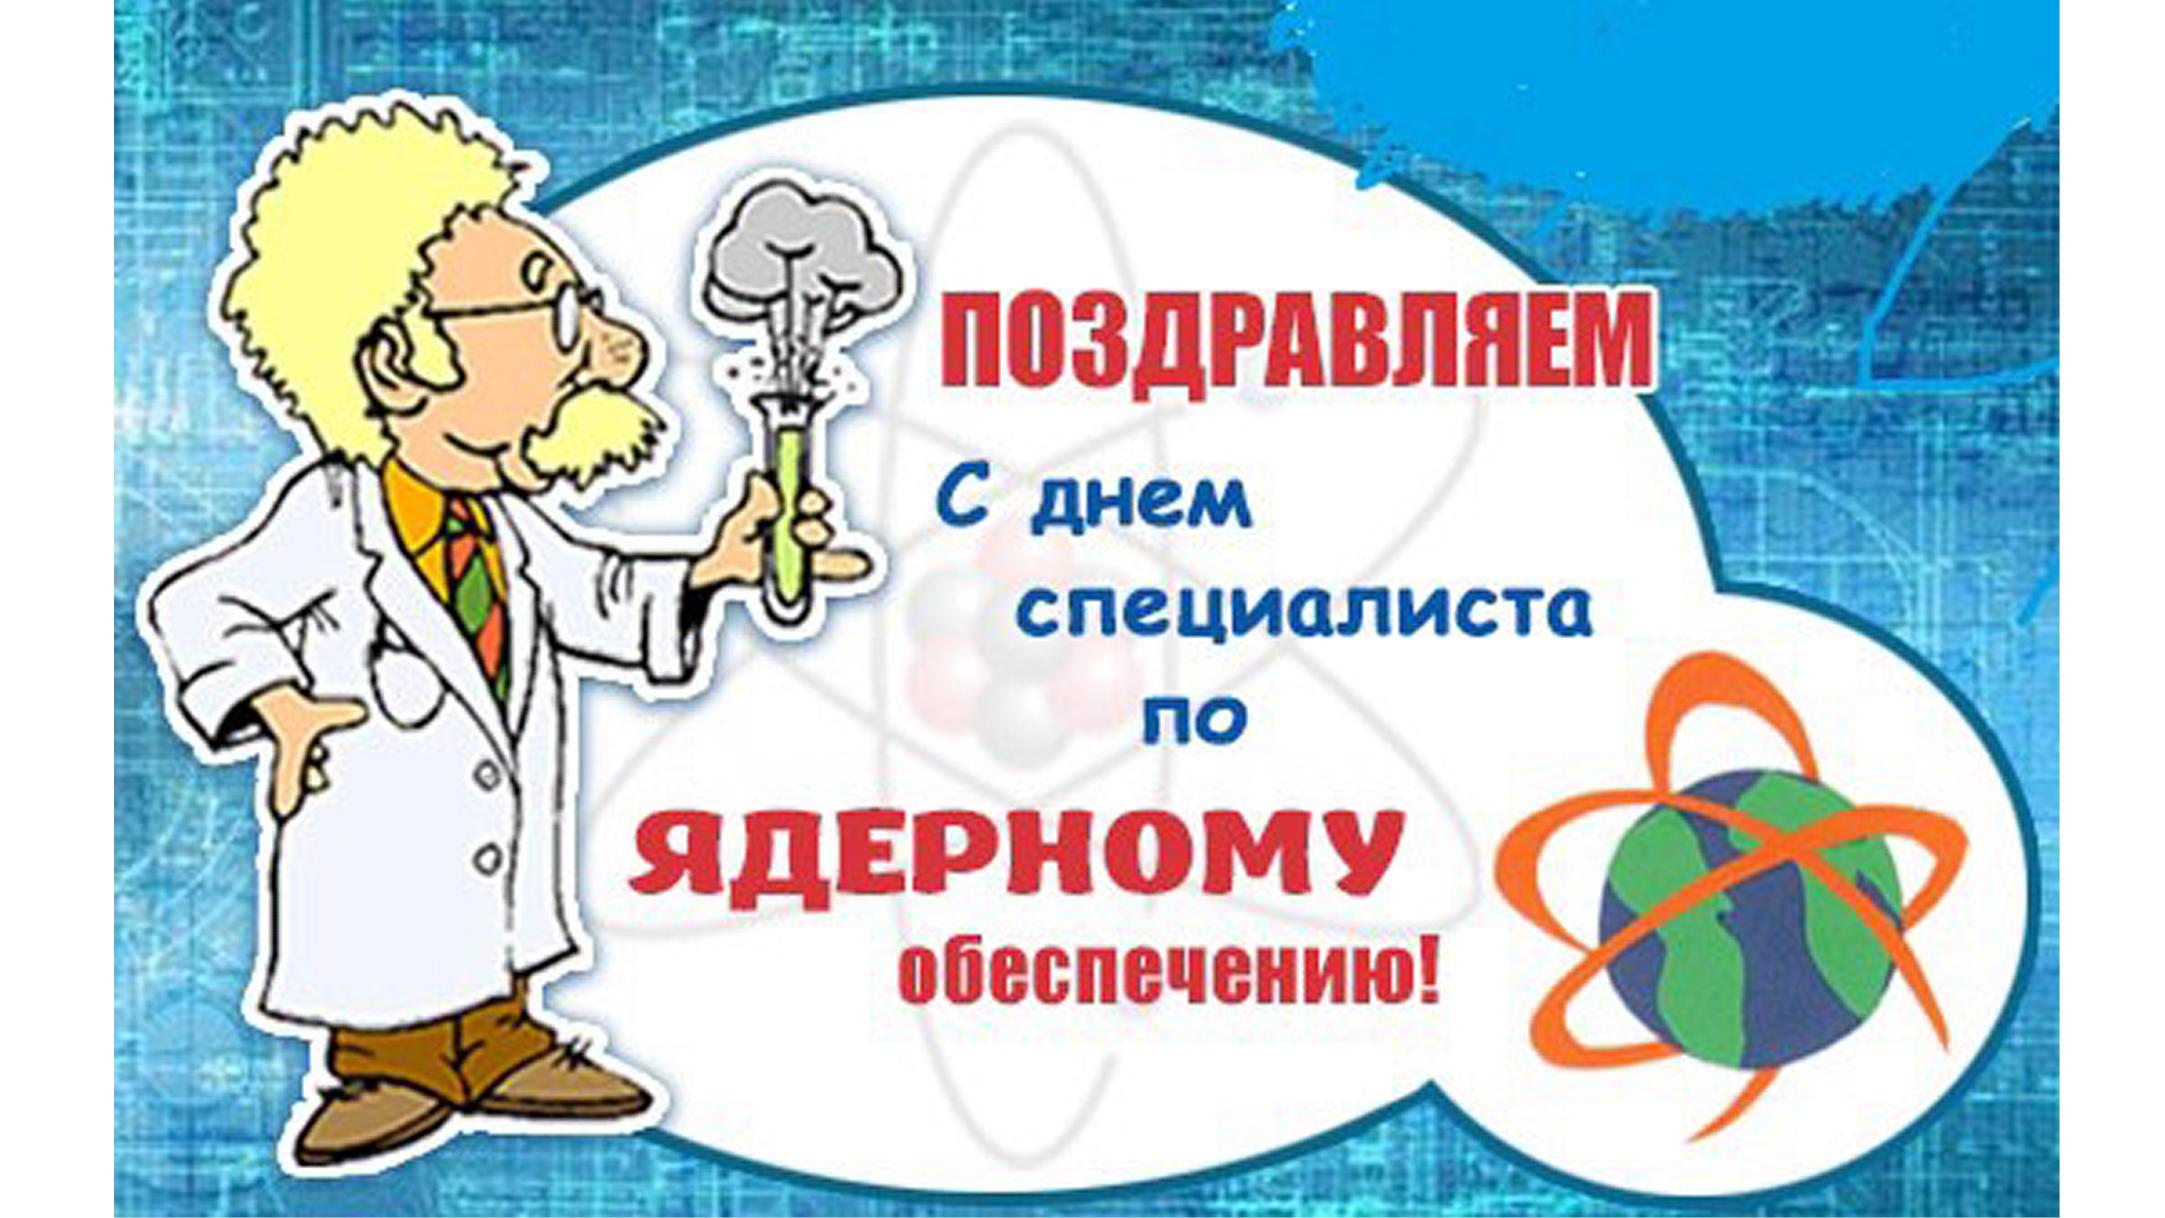 4 Сентября день специалиста по ядерному обеспечению России